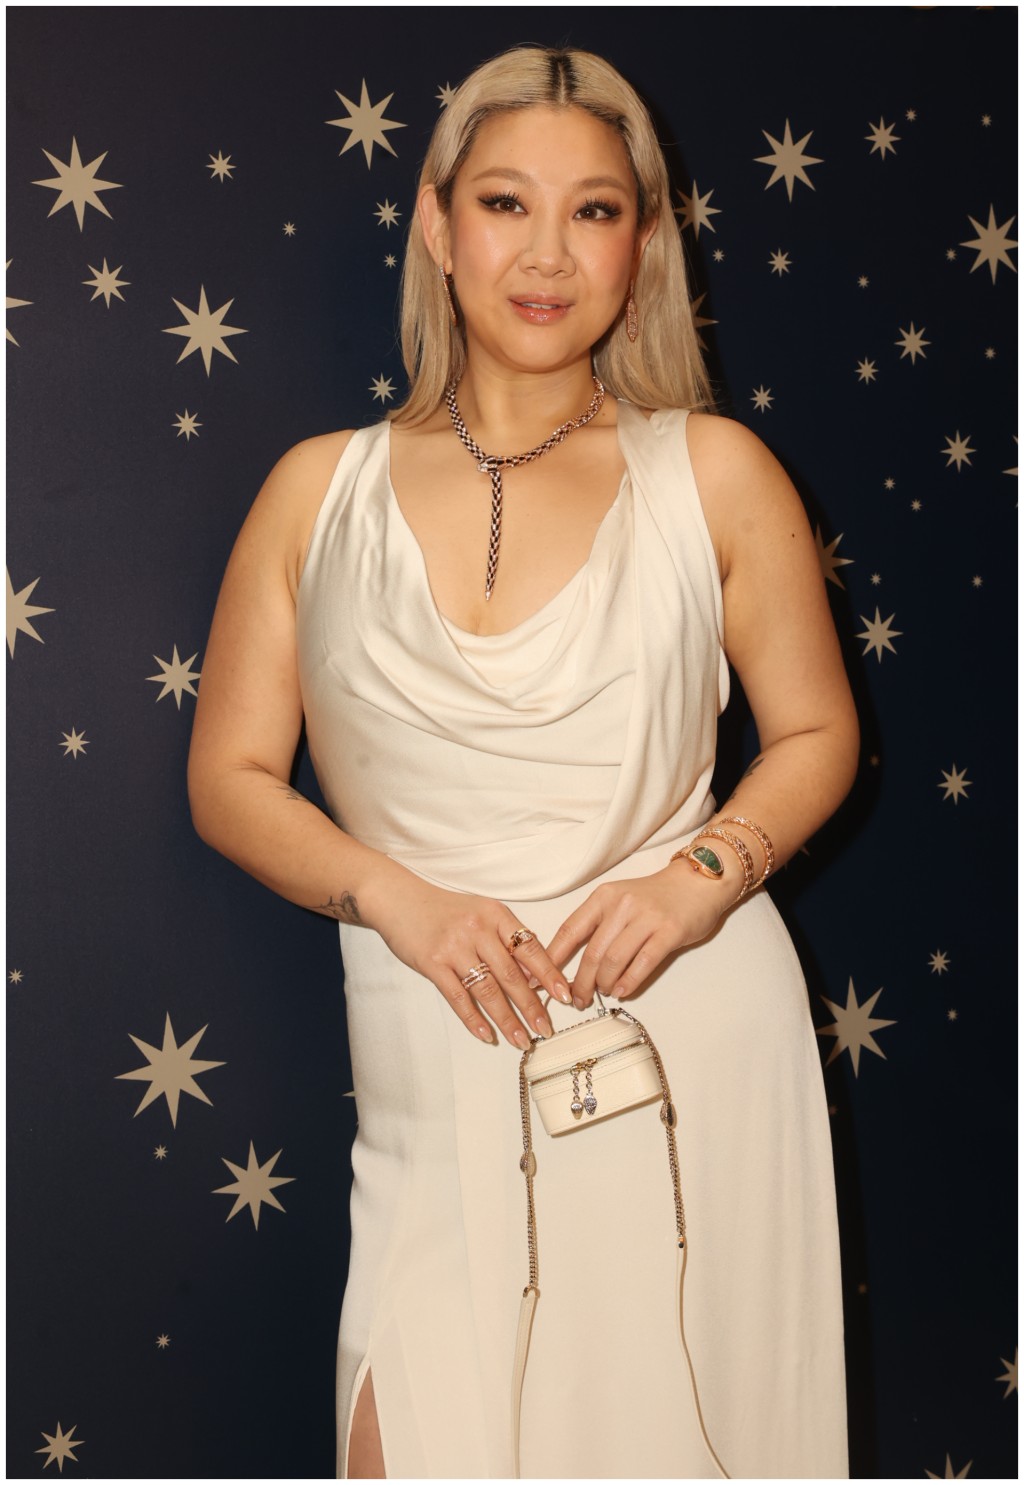 郑欣宜以低胸晚装亮相珠宝品牌BVLGARI在中环旗舰店举行的“I Believe In Wonder”圣诞派对。